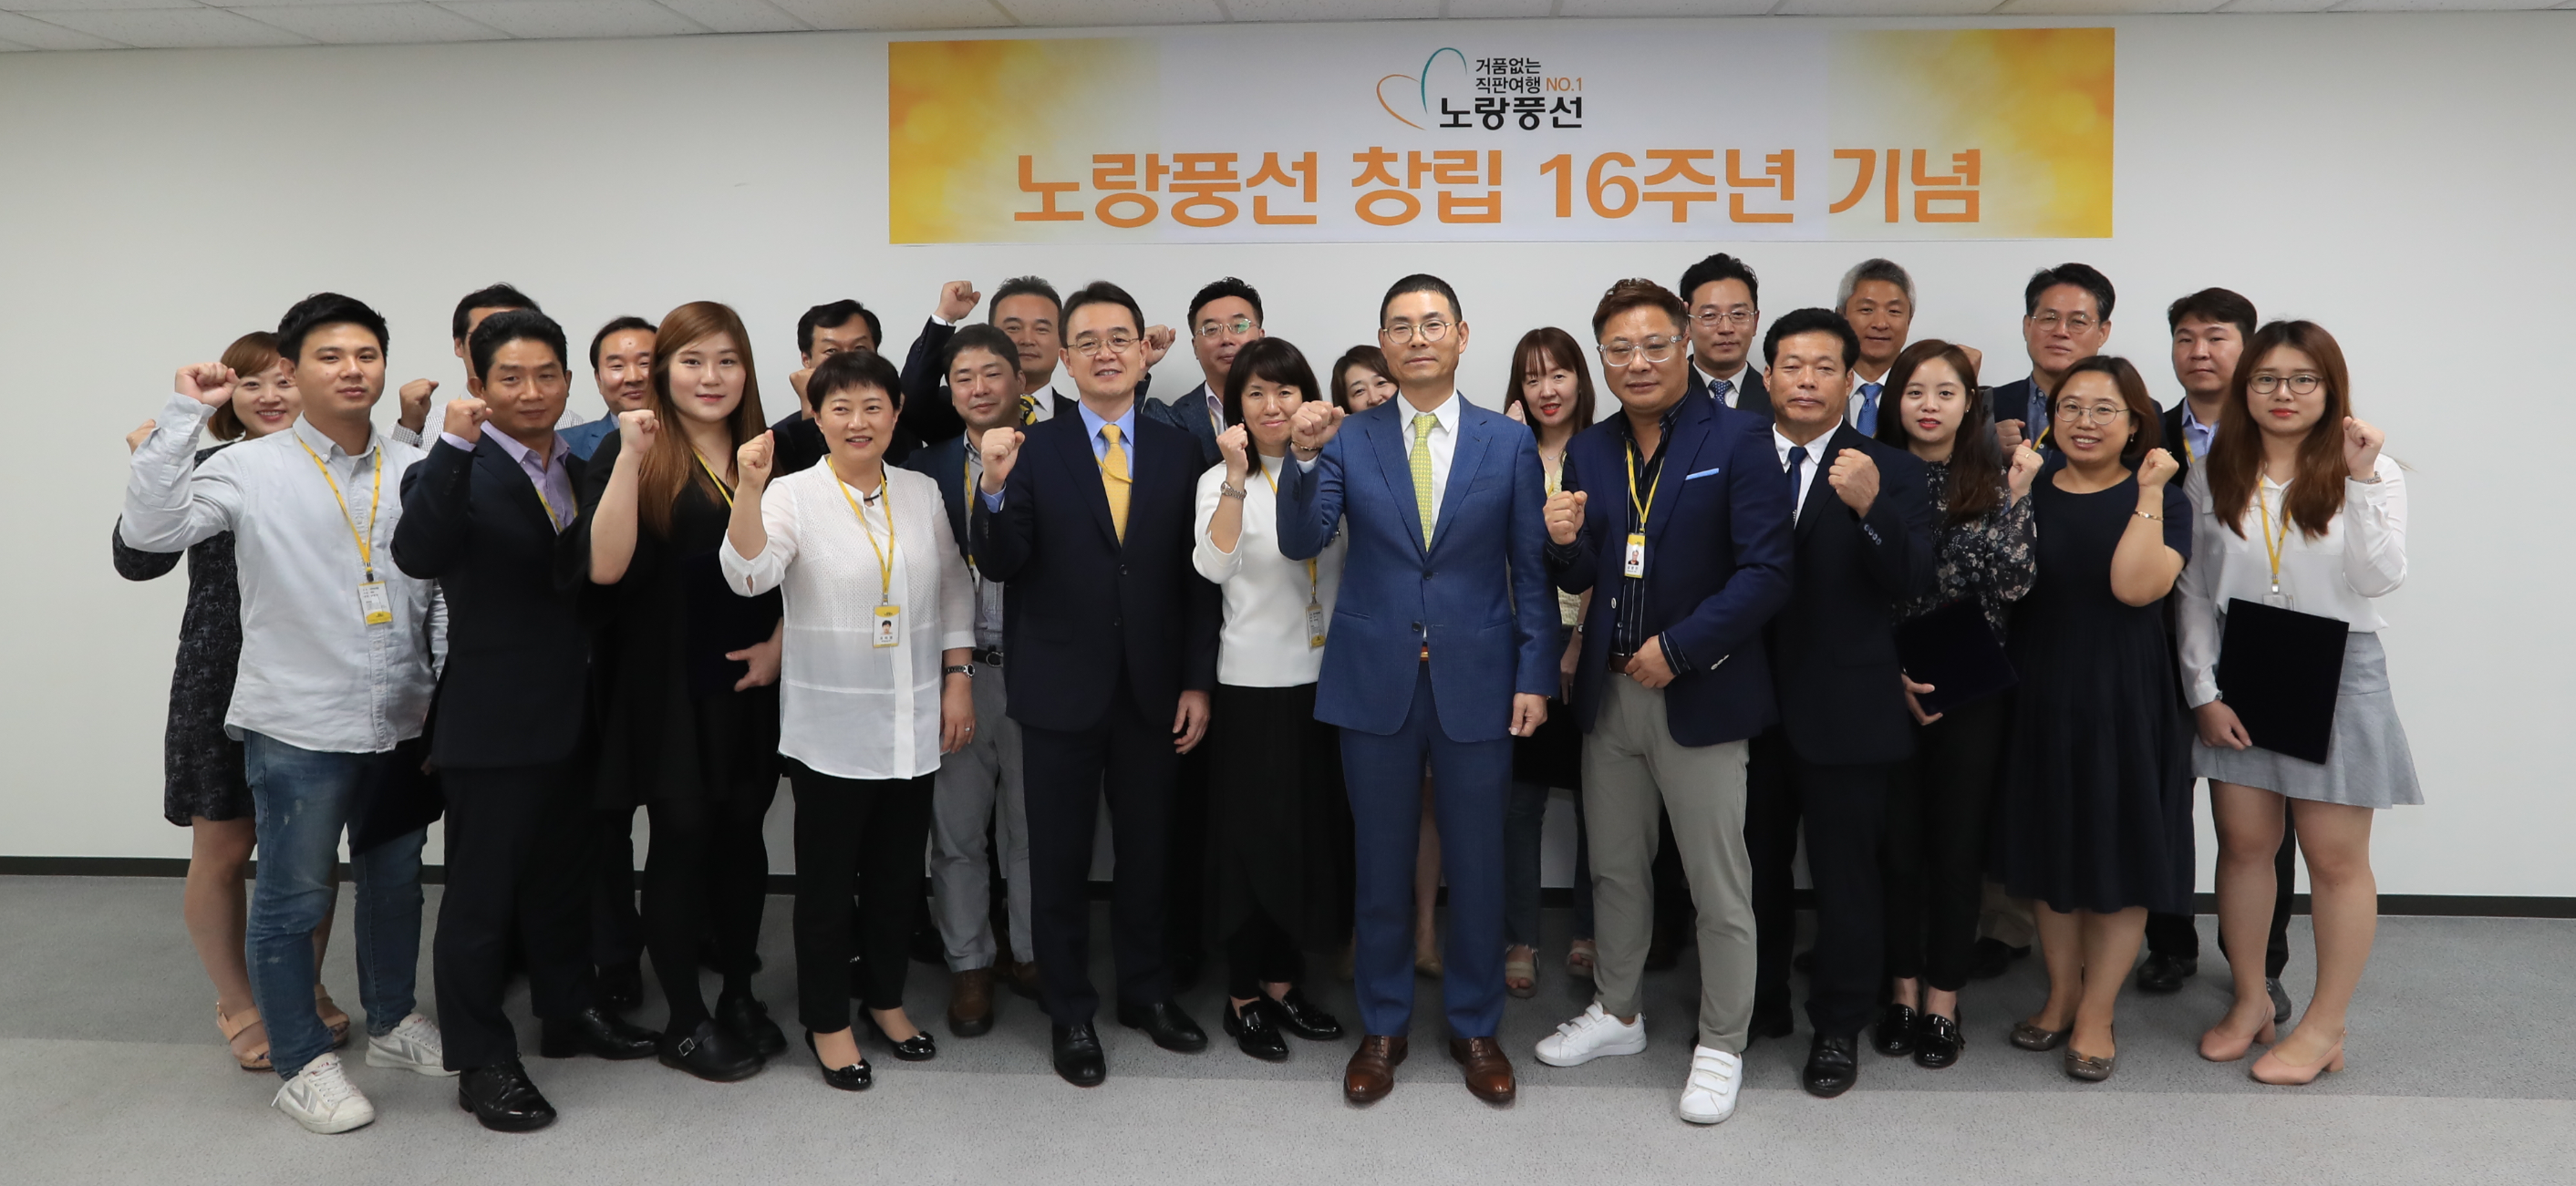 [파이낸셜뉴스] 노랑풍선, 창립 16주년 기념식 개최